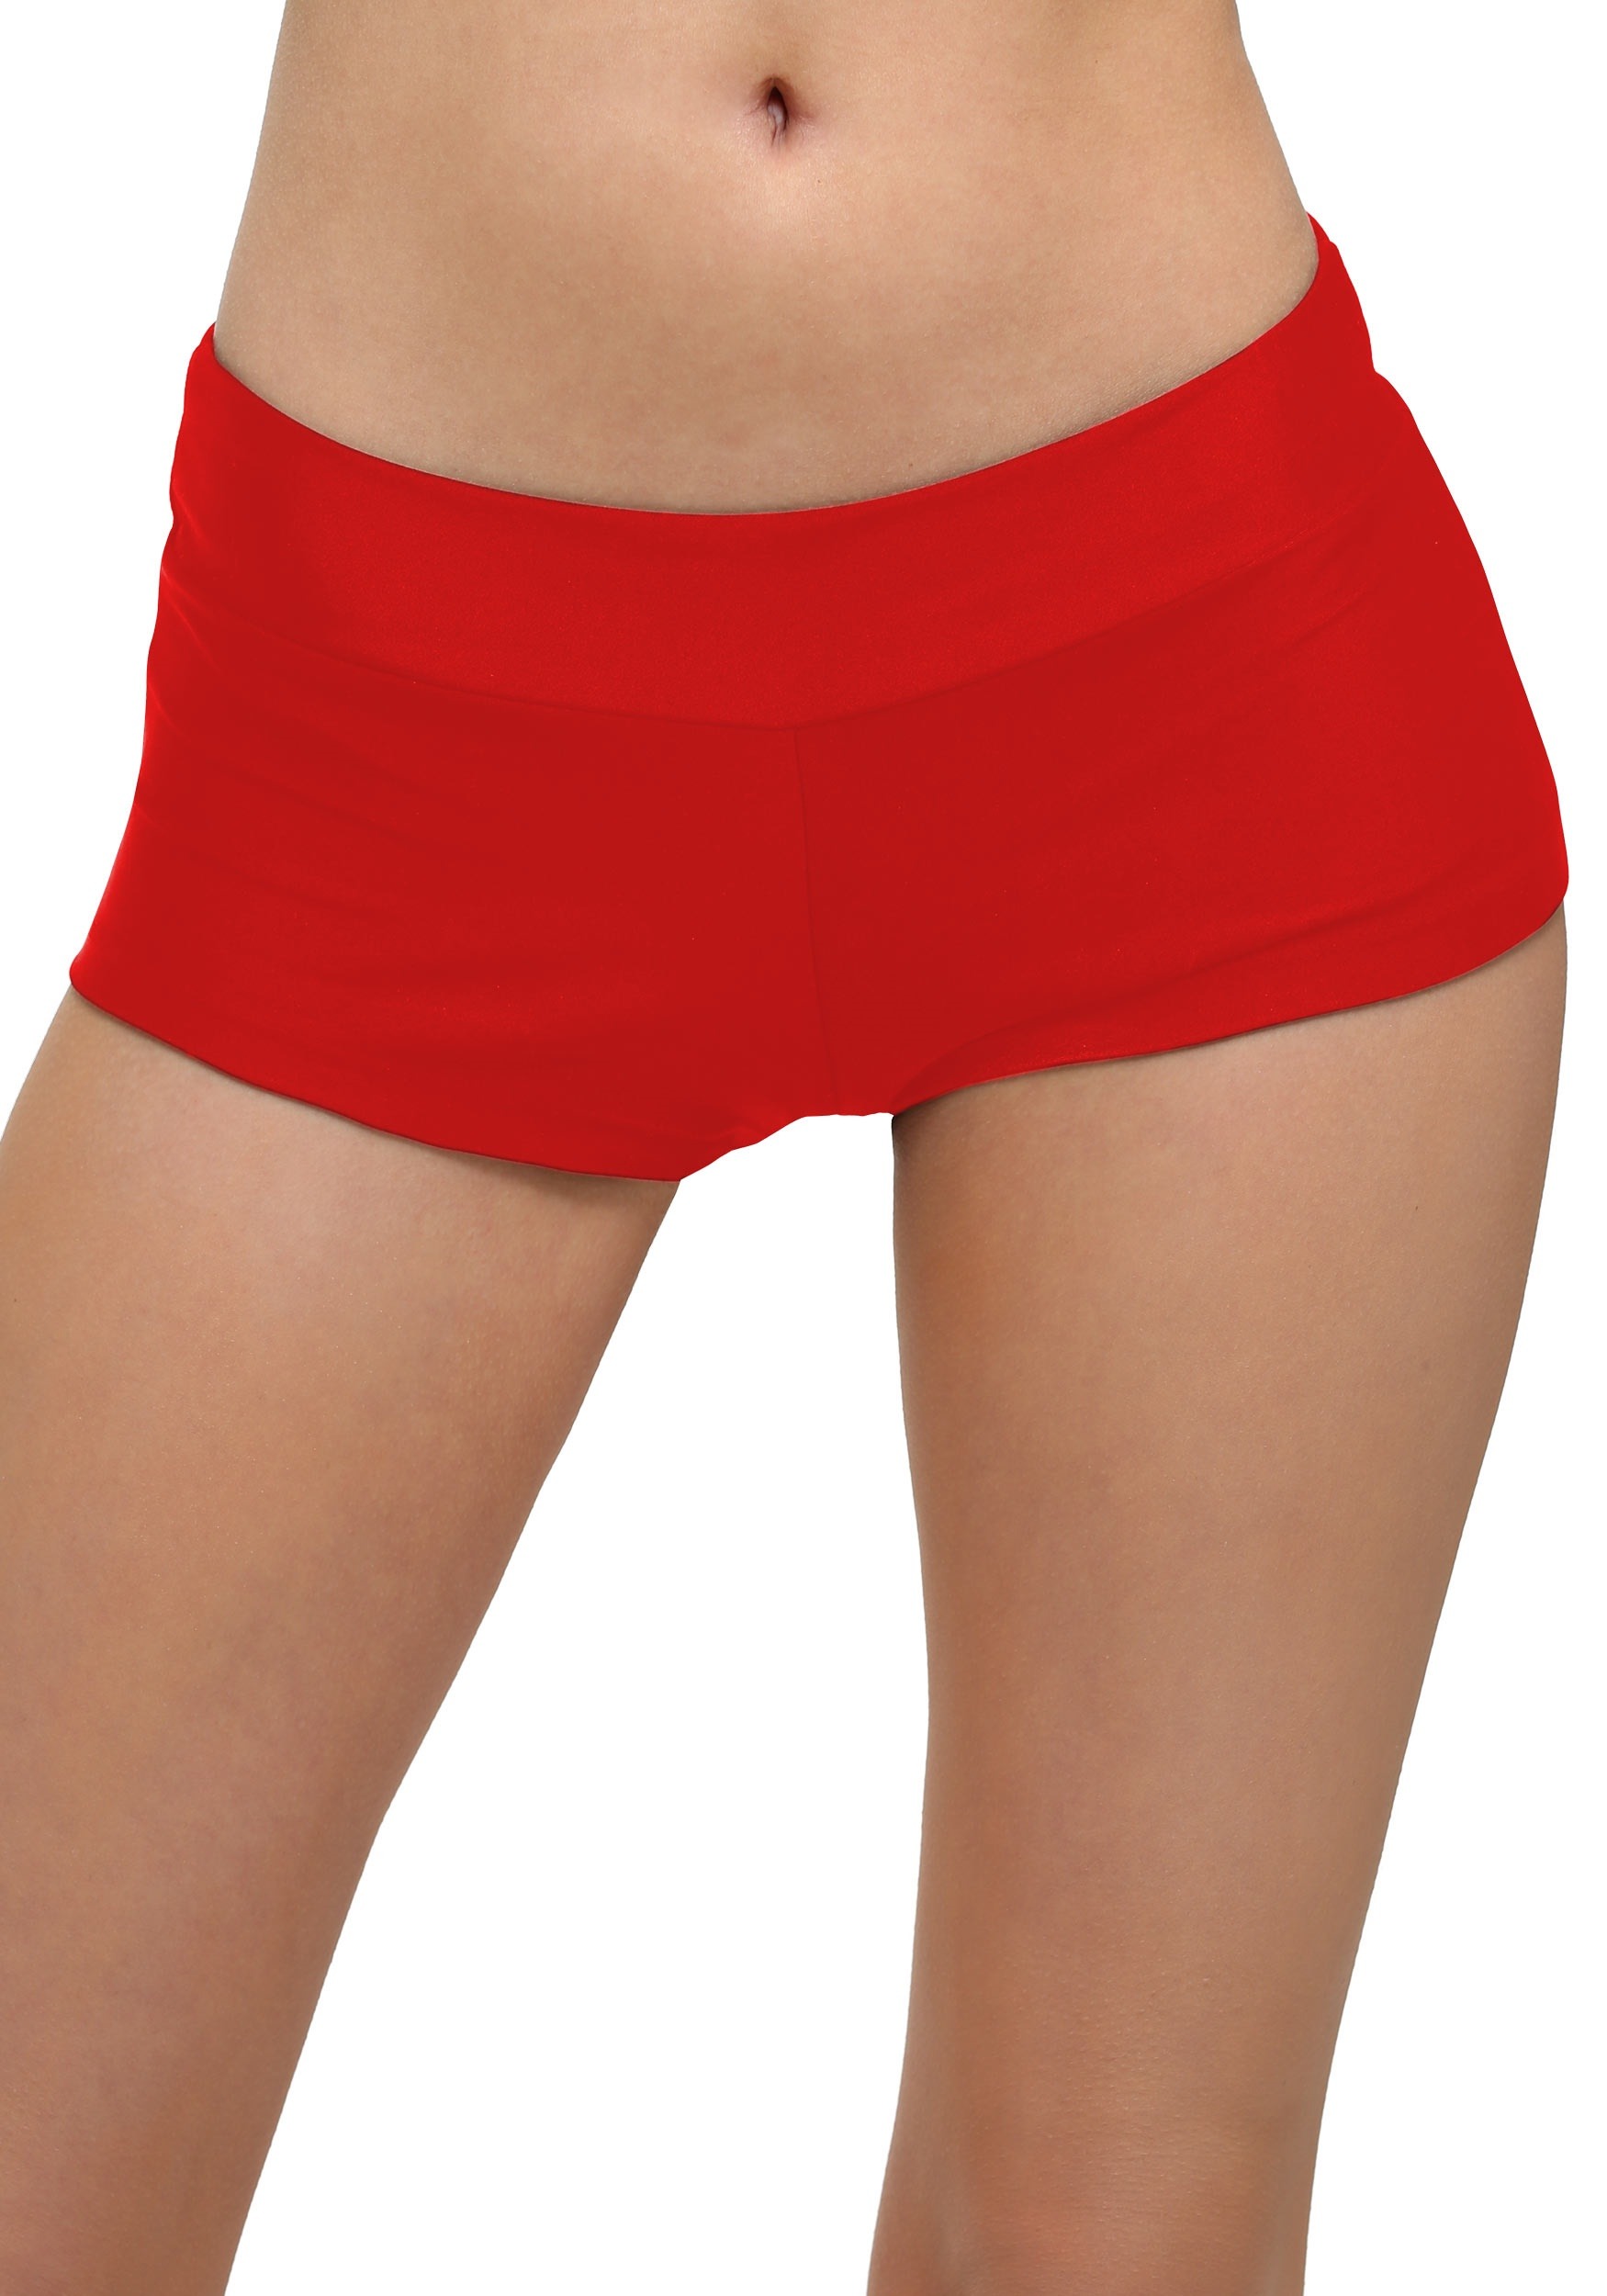 Women's Deluxe Red Hot Pants